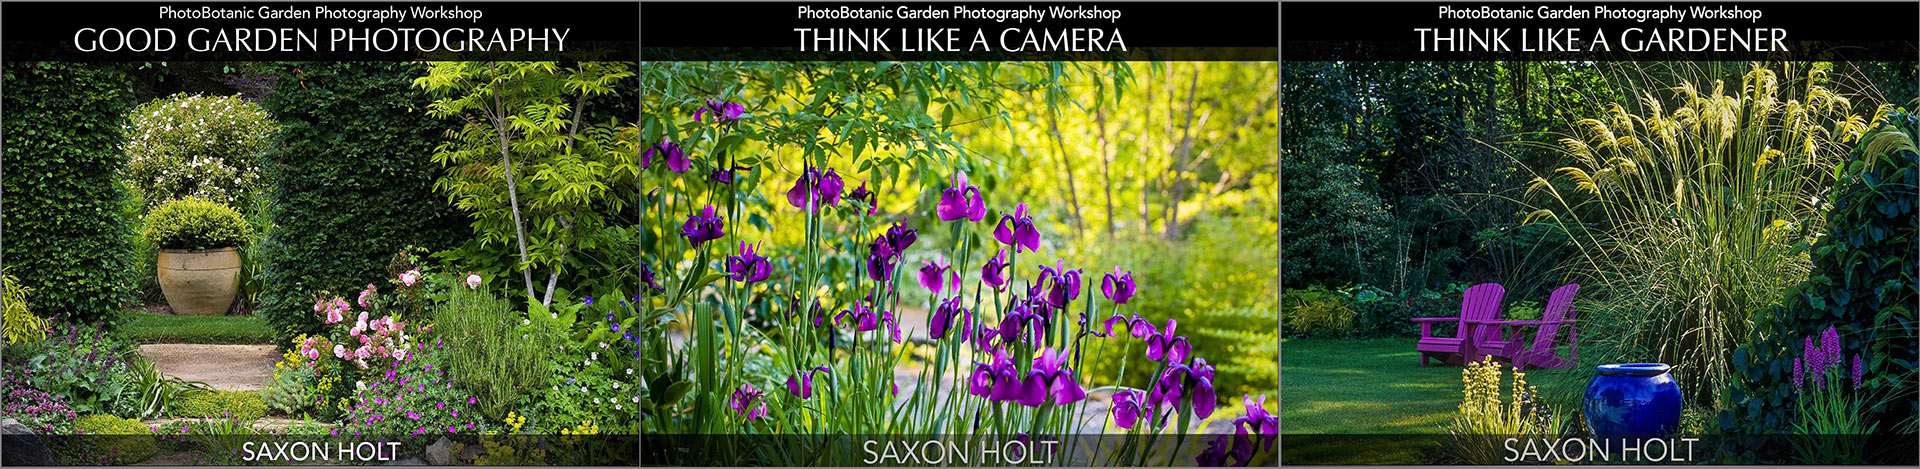 Good Garden Photography eBook cover